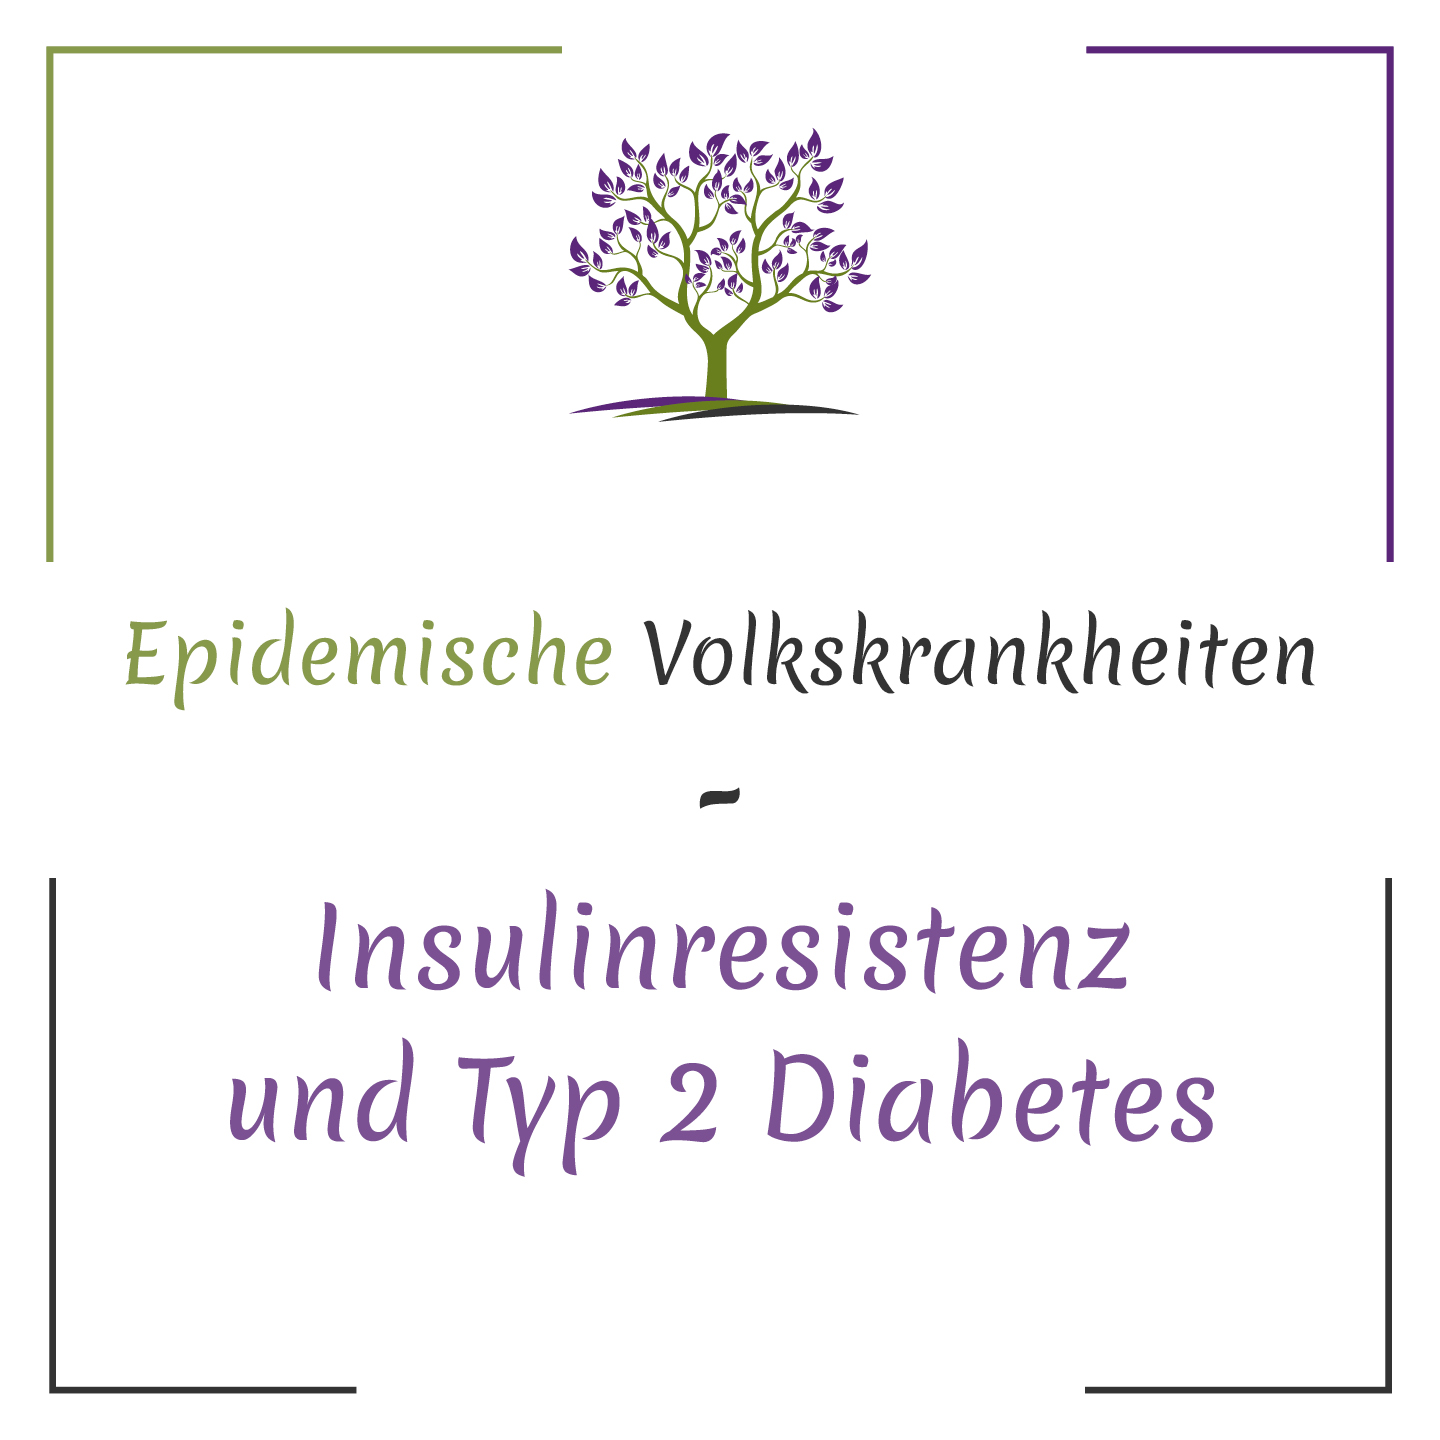 Epidemische Volkskrankheiten: Insulinresistenz und Typ 2 Diabetes